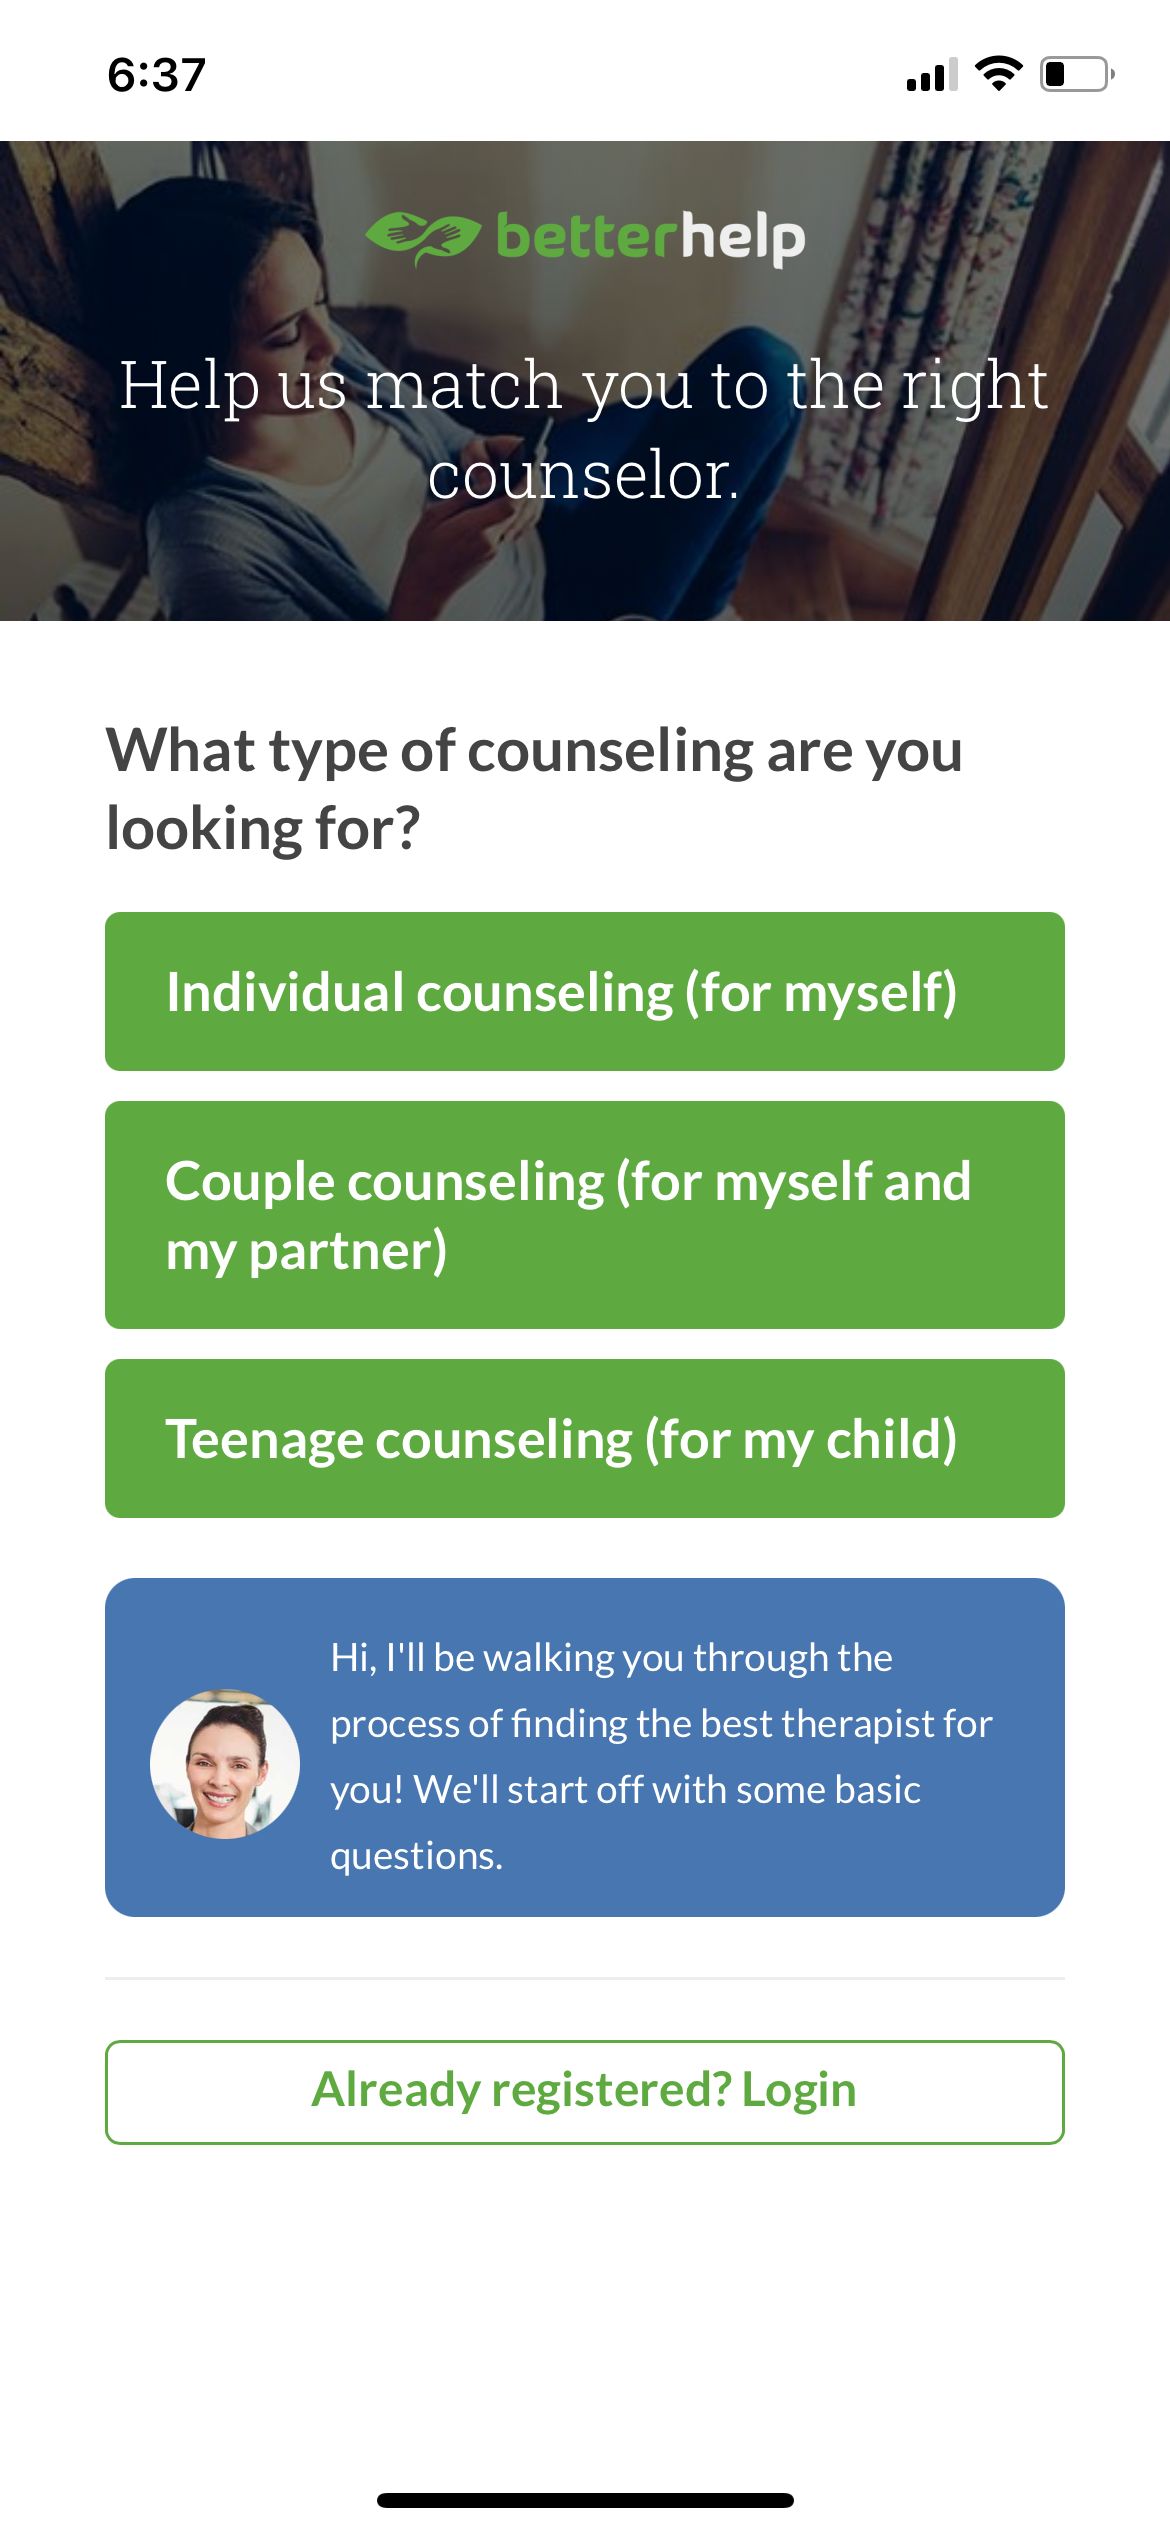 betterhelp counseling choose